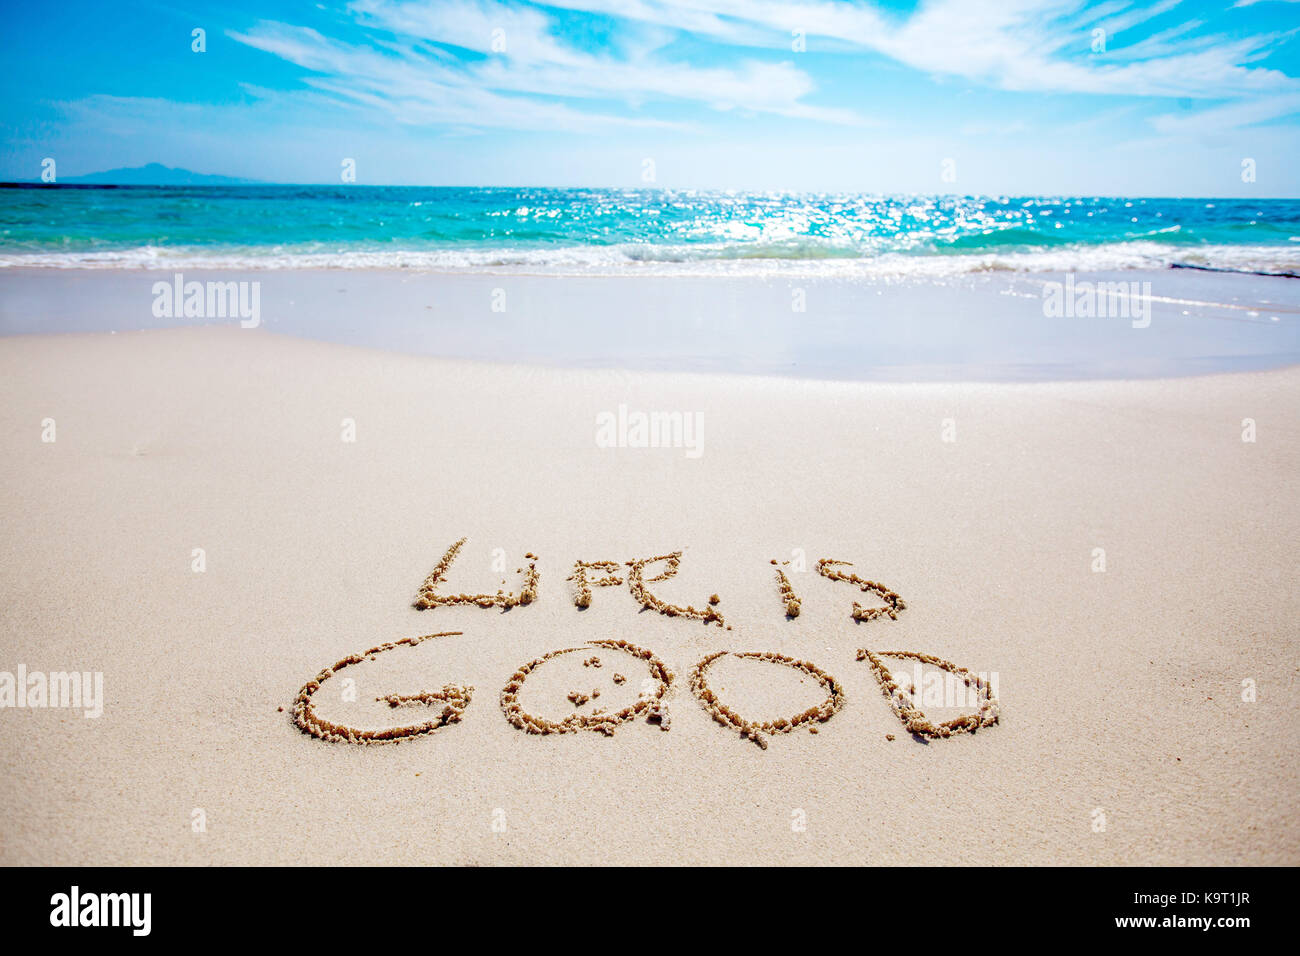 Life is beach. Life is good на песке. Надпись жизнь хороша. Life is good надпись. Картинки море песочный пляж красивые с надписью мотивирующей.